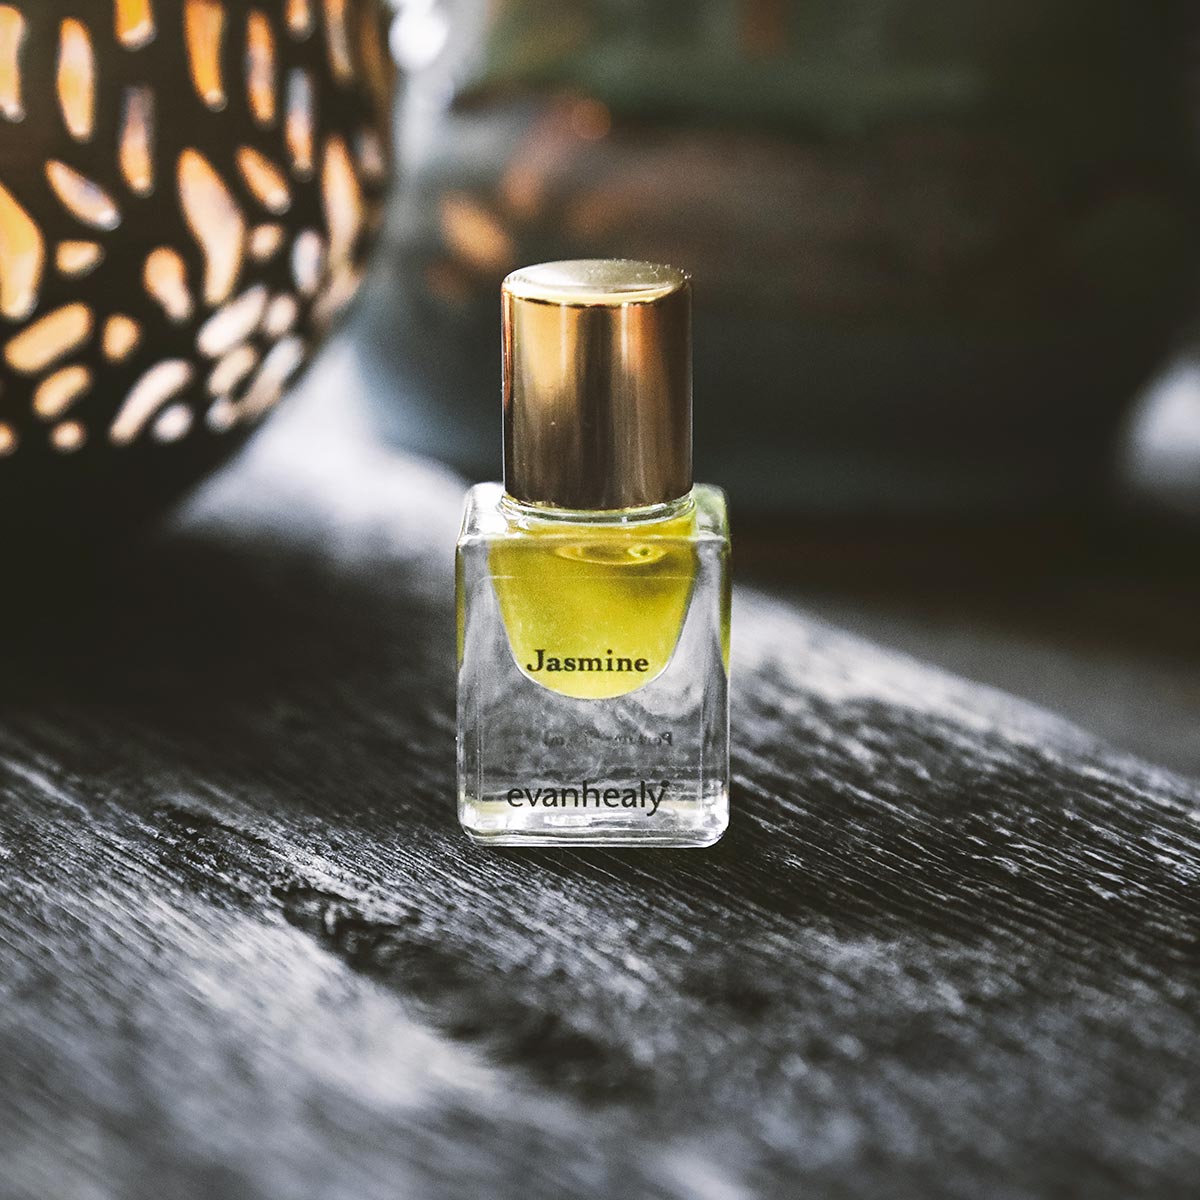 evanhealy jasmine essential oil perfume on wood table